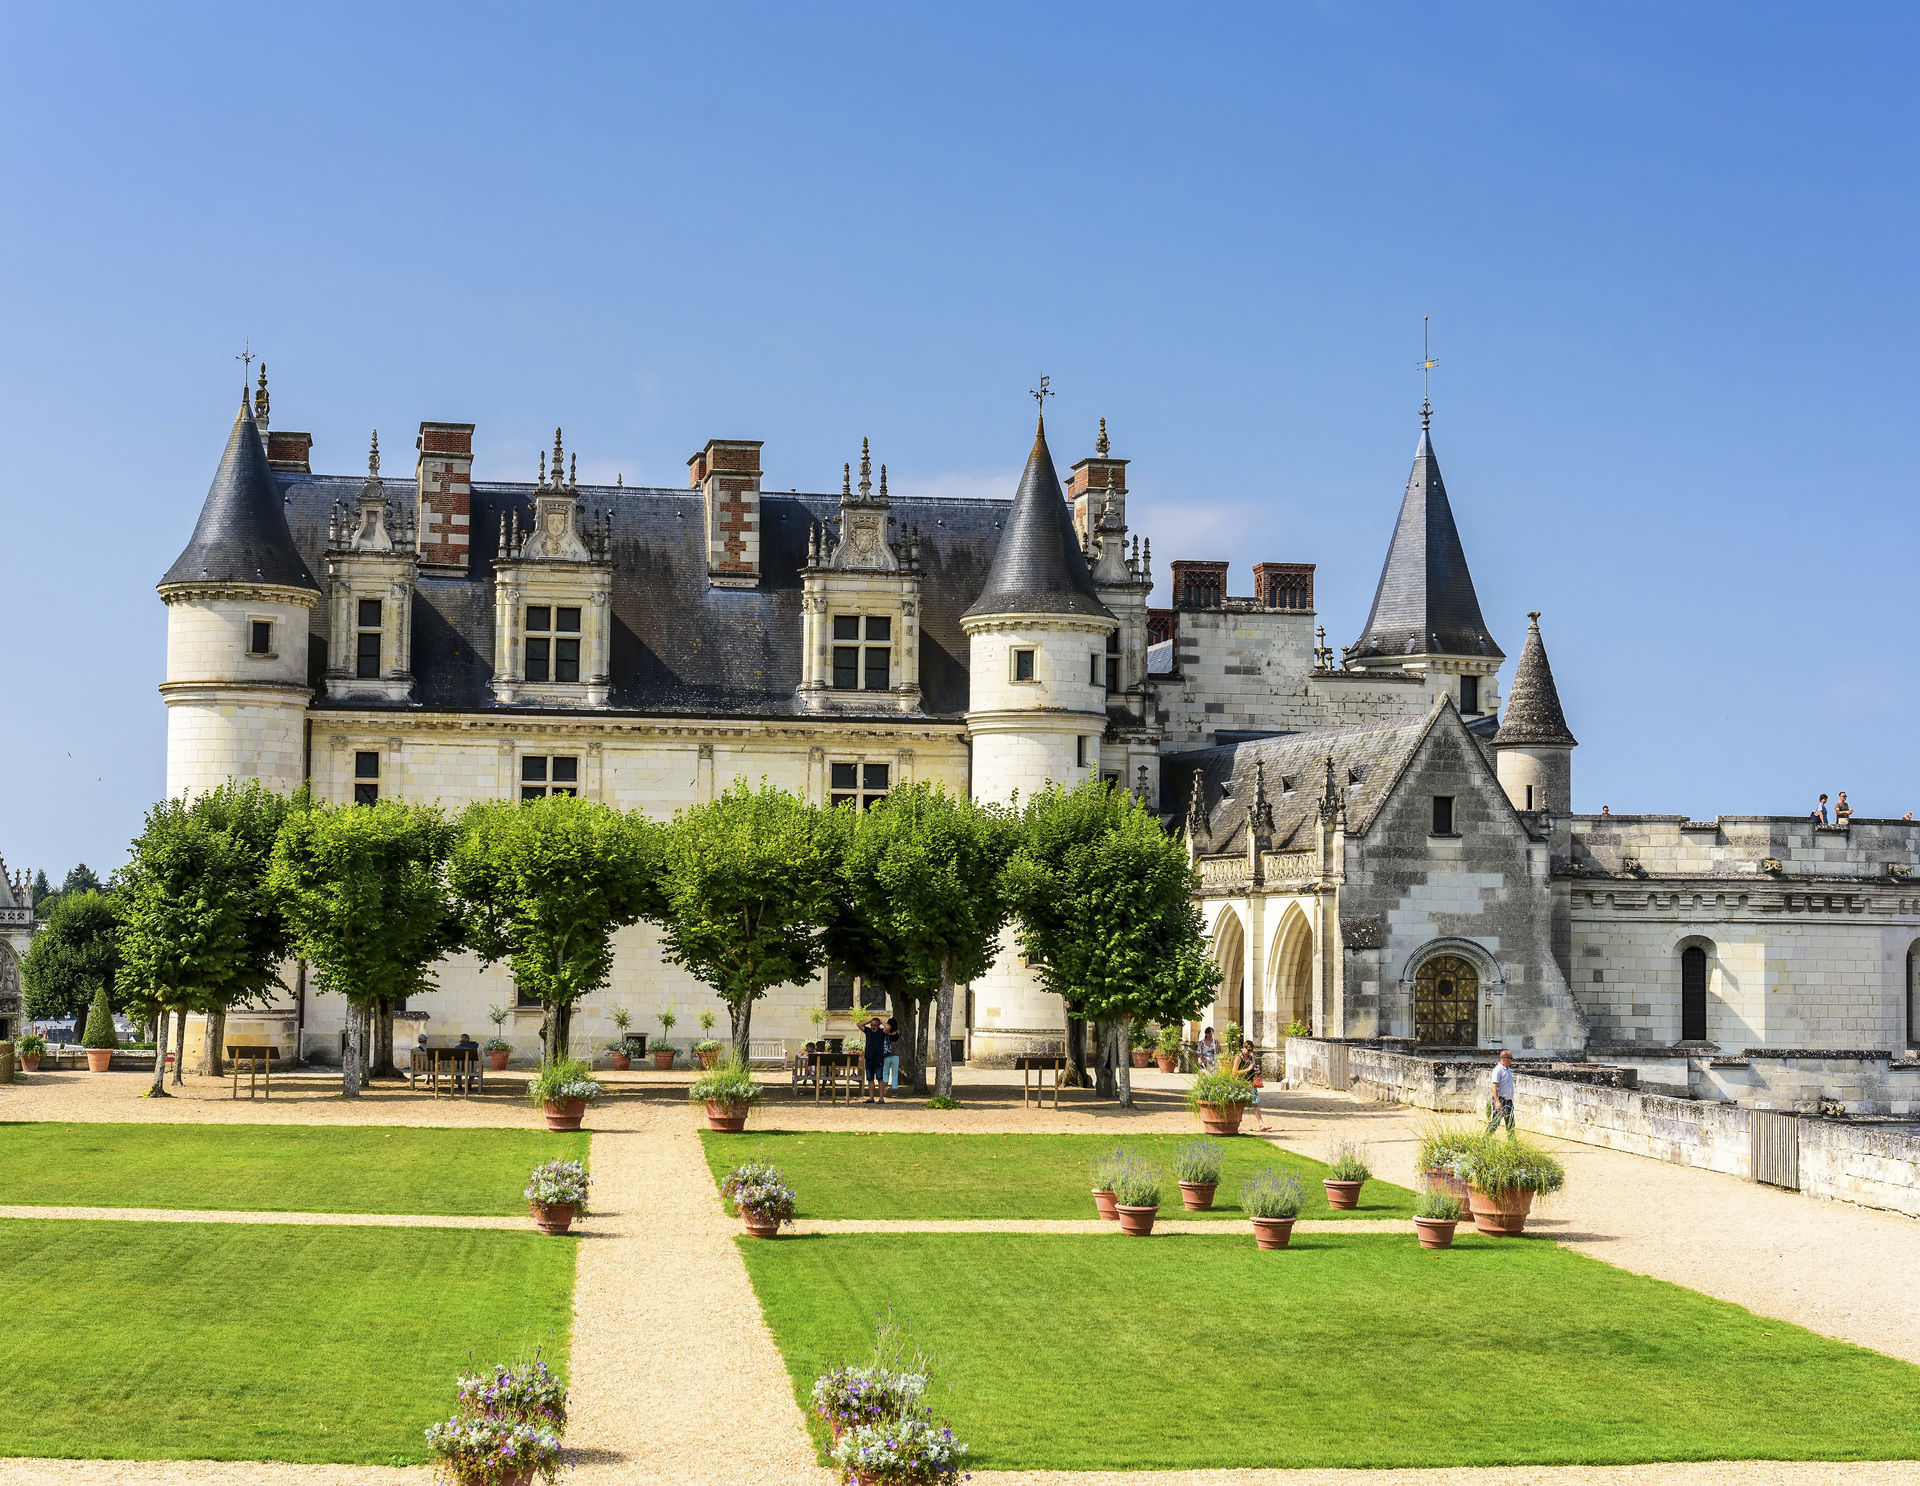 Best Western Plus Hôtel de la cité Royale - Chateau amboise